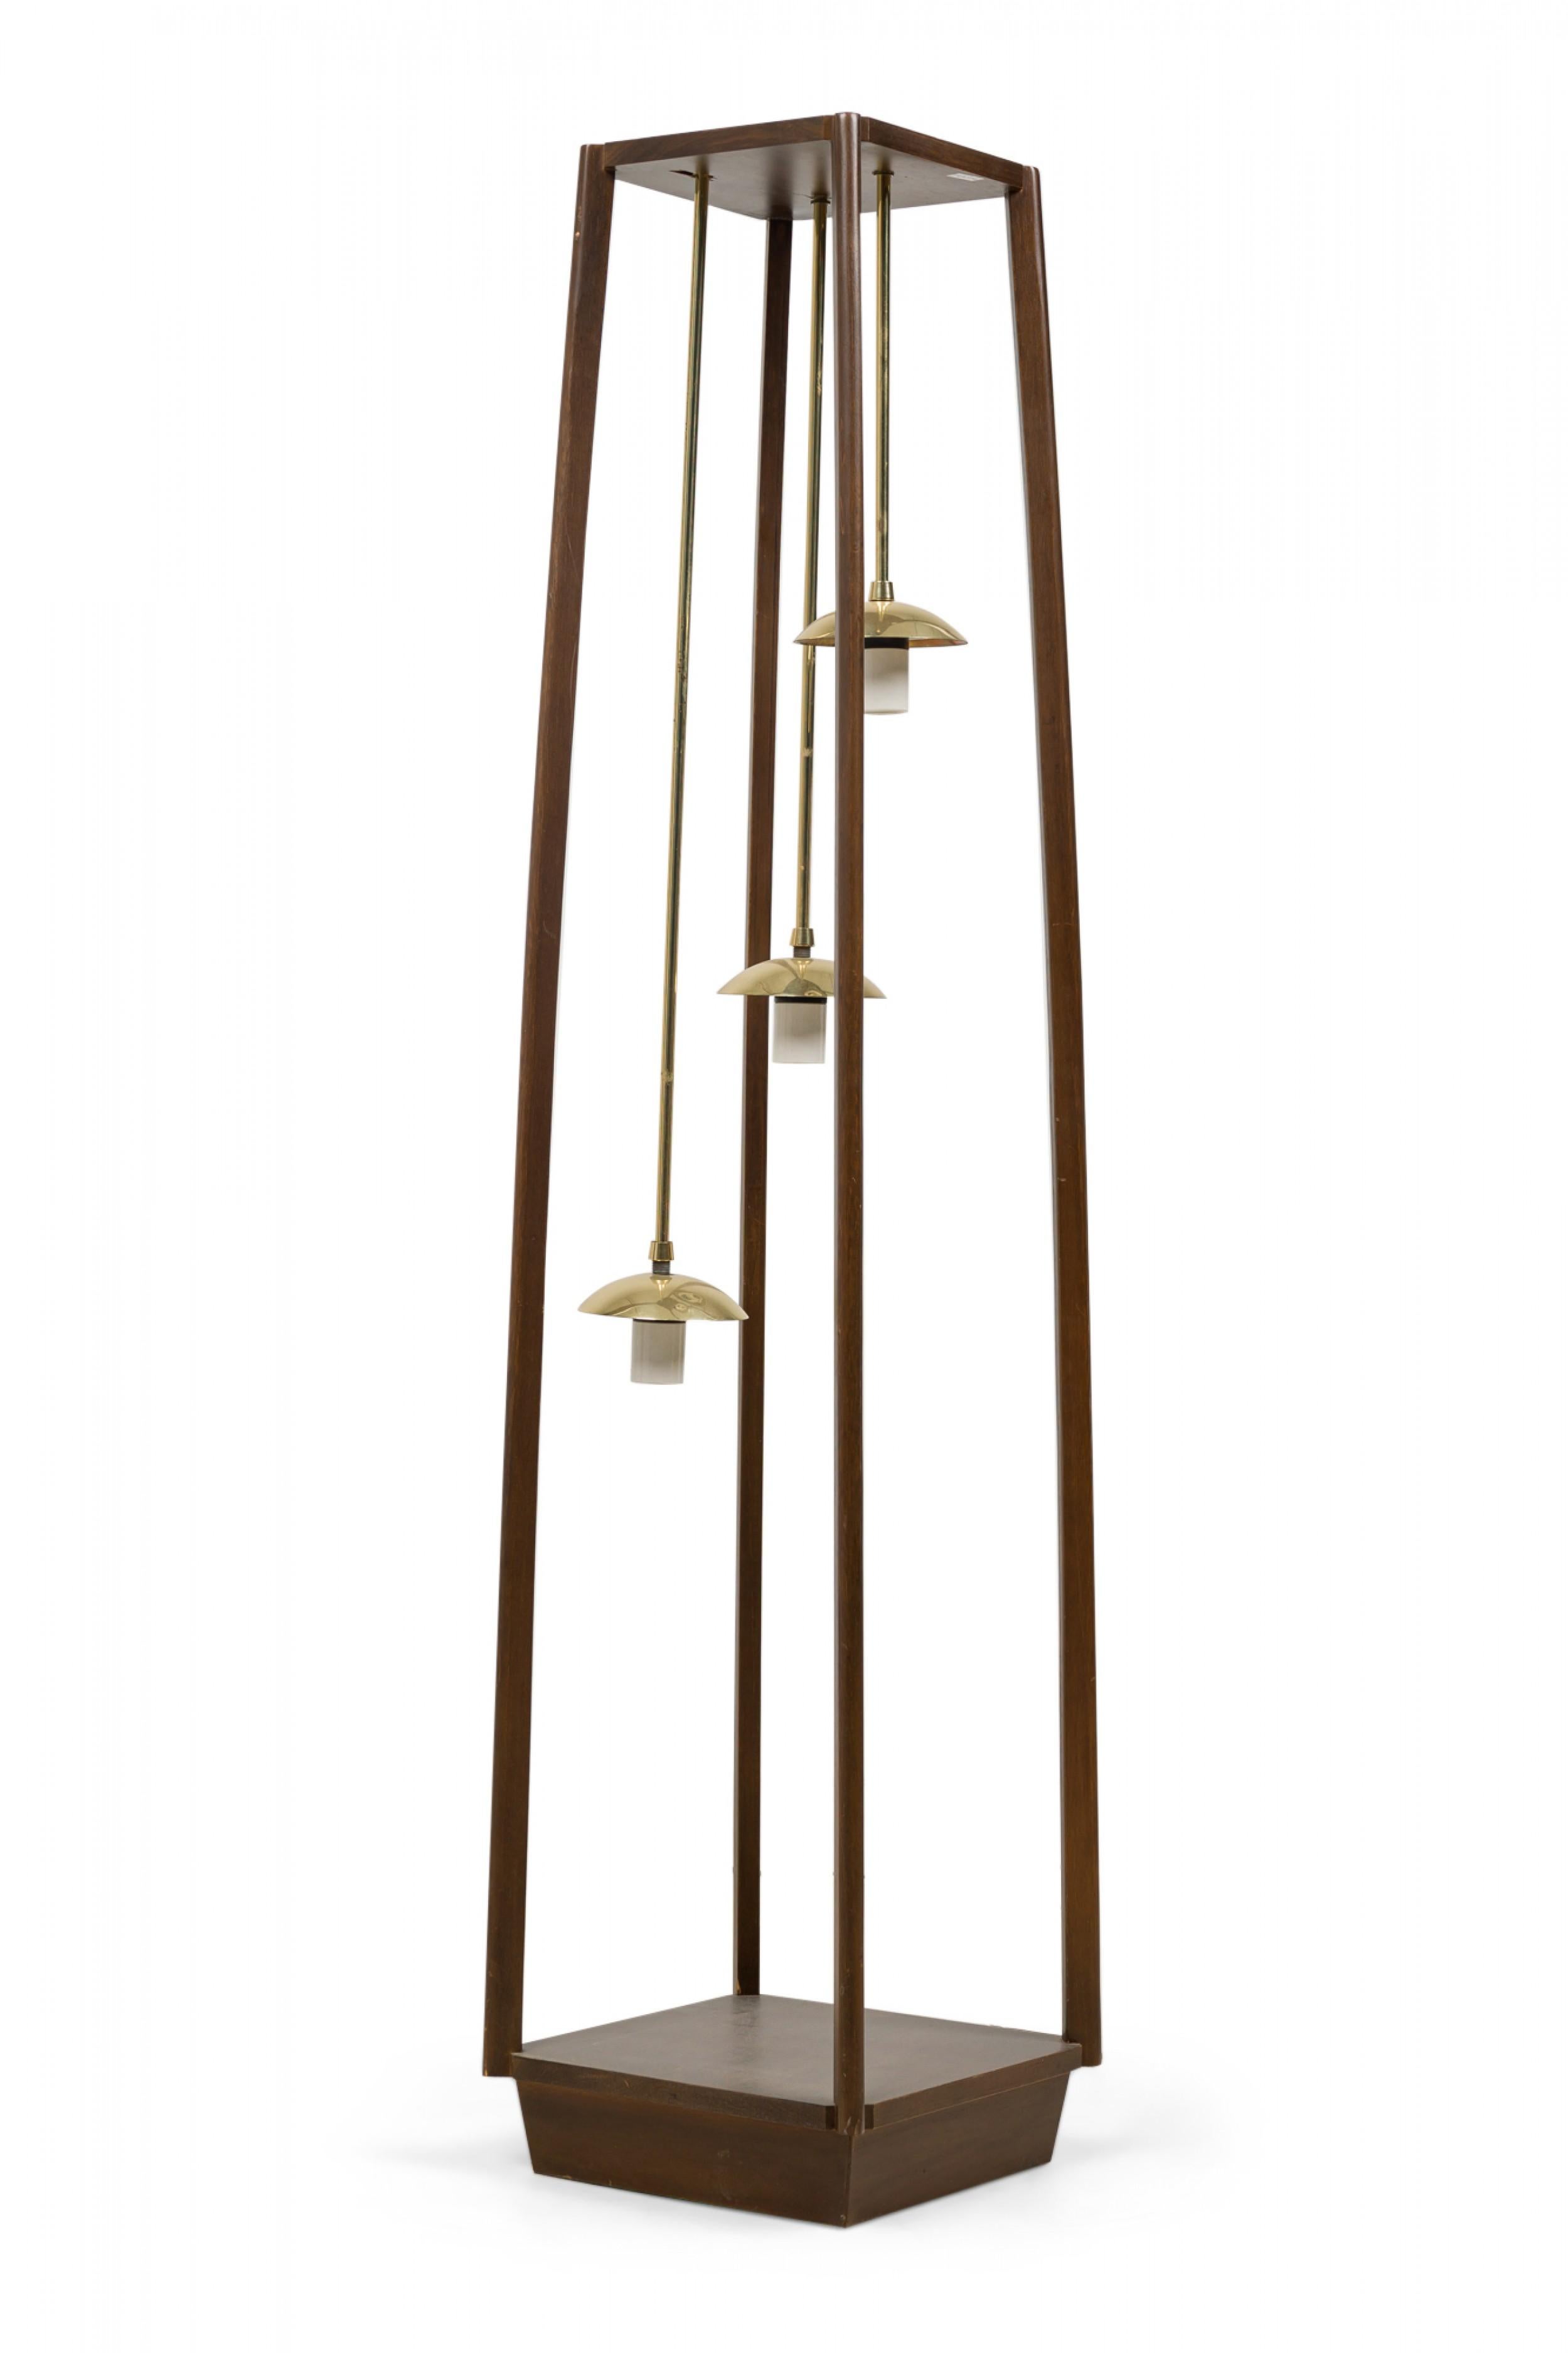 Lampadaire italien de style moderne du milieu du siècle, composé d'un cadre en bois qui se rétrécit légèrement vers le haut, suspendant trois lampes suspendues en laiton à des hauteurs échelonnées, chacune ayant un abat-jour en forme de dôme en